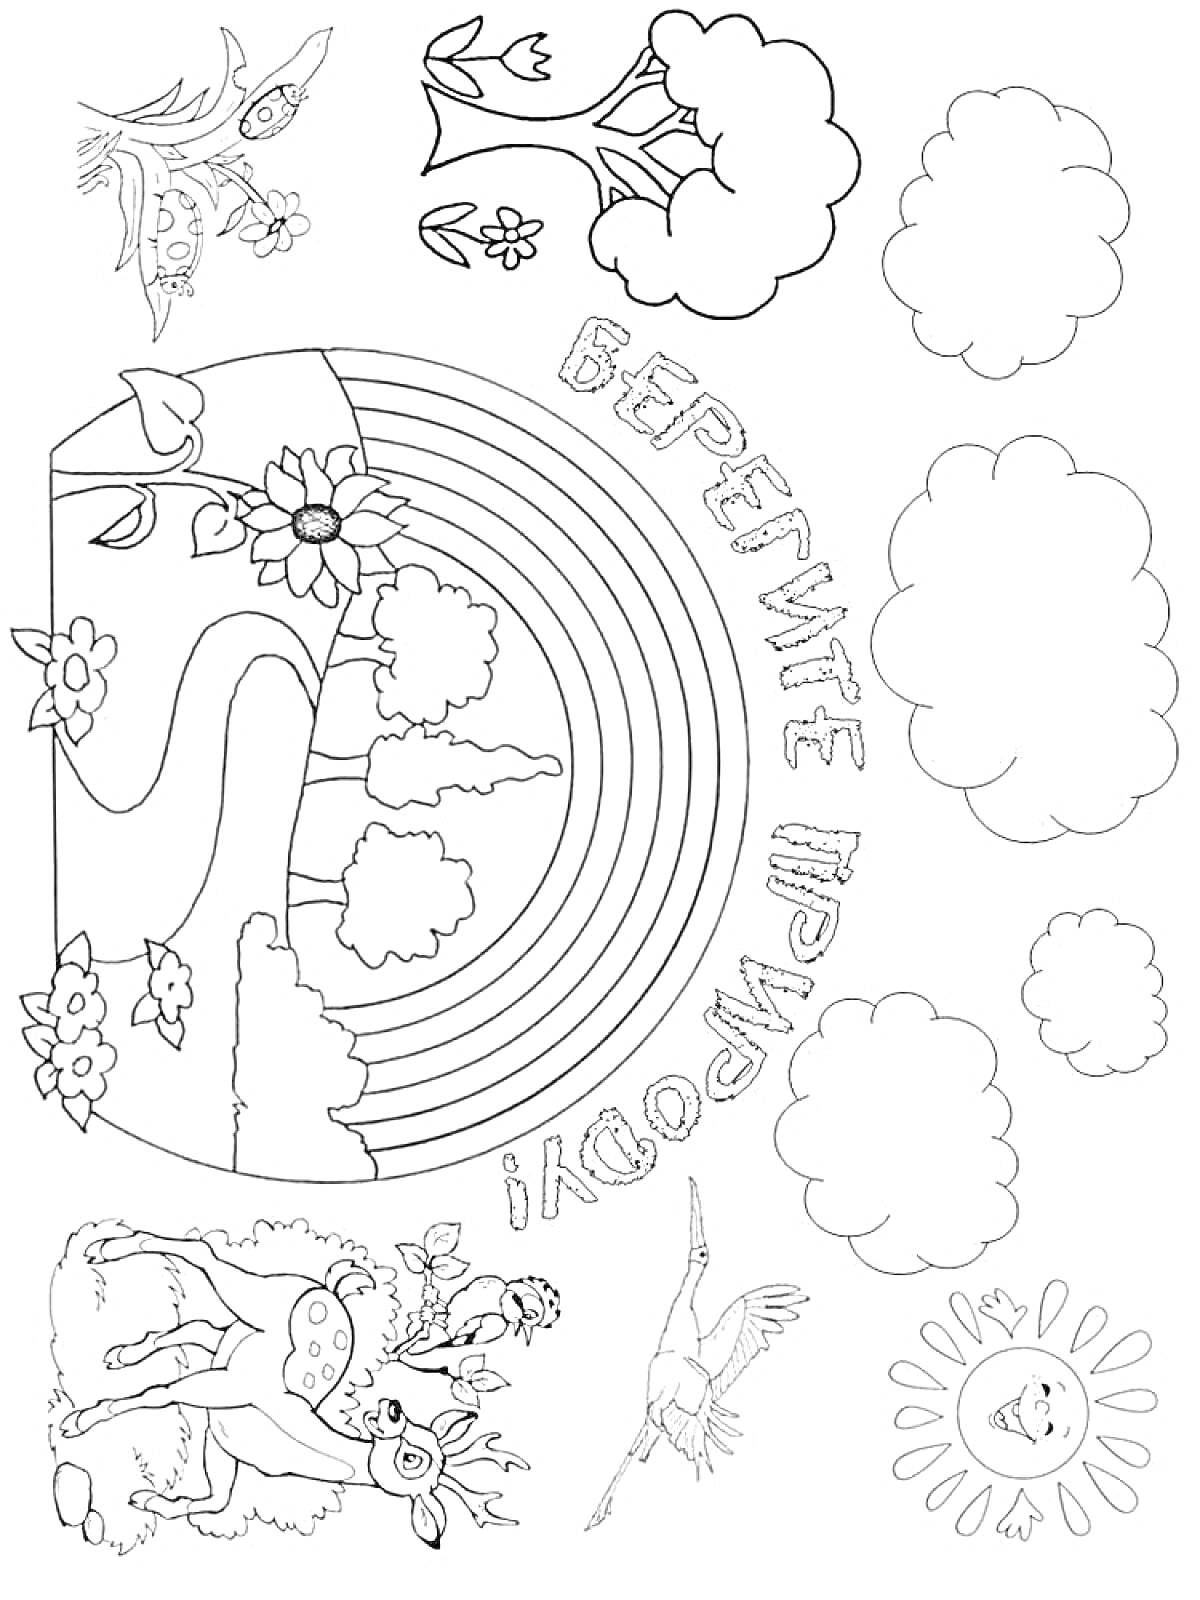 На раскраске изображено: Экология, Природа, Радуга, Олень, Цветы, Деревья, Облака, Птица, Солнце, Защита природы